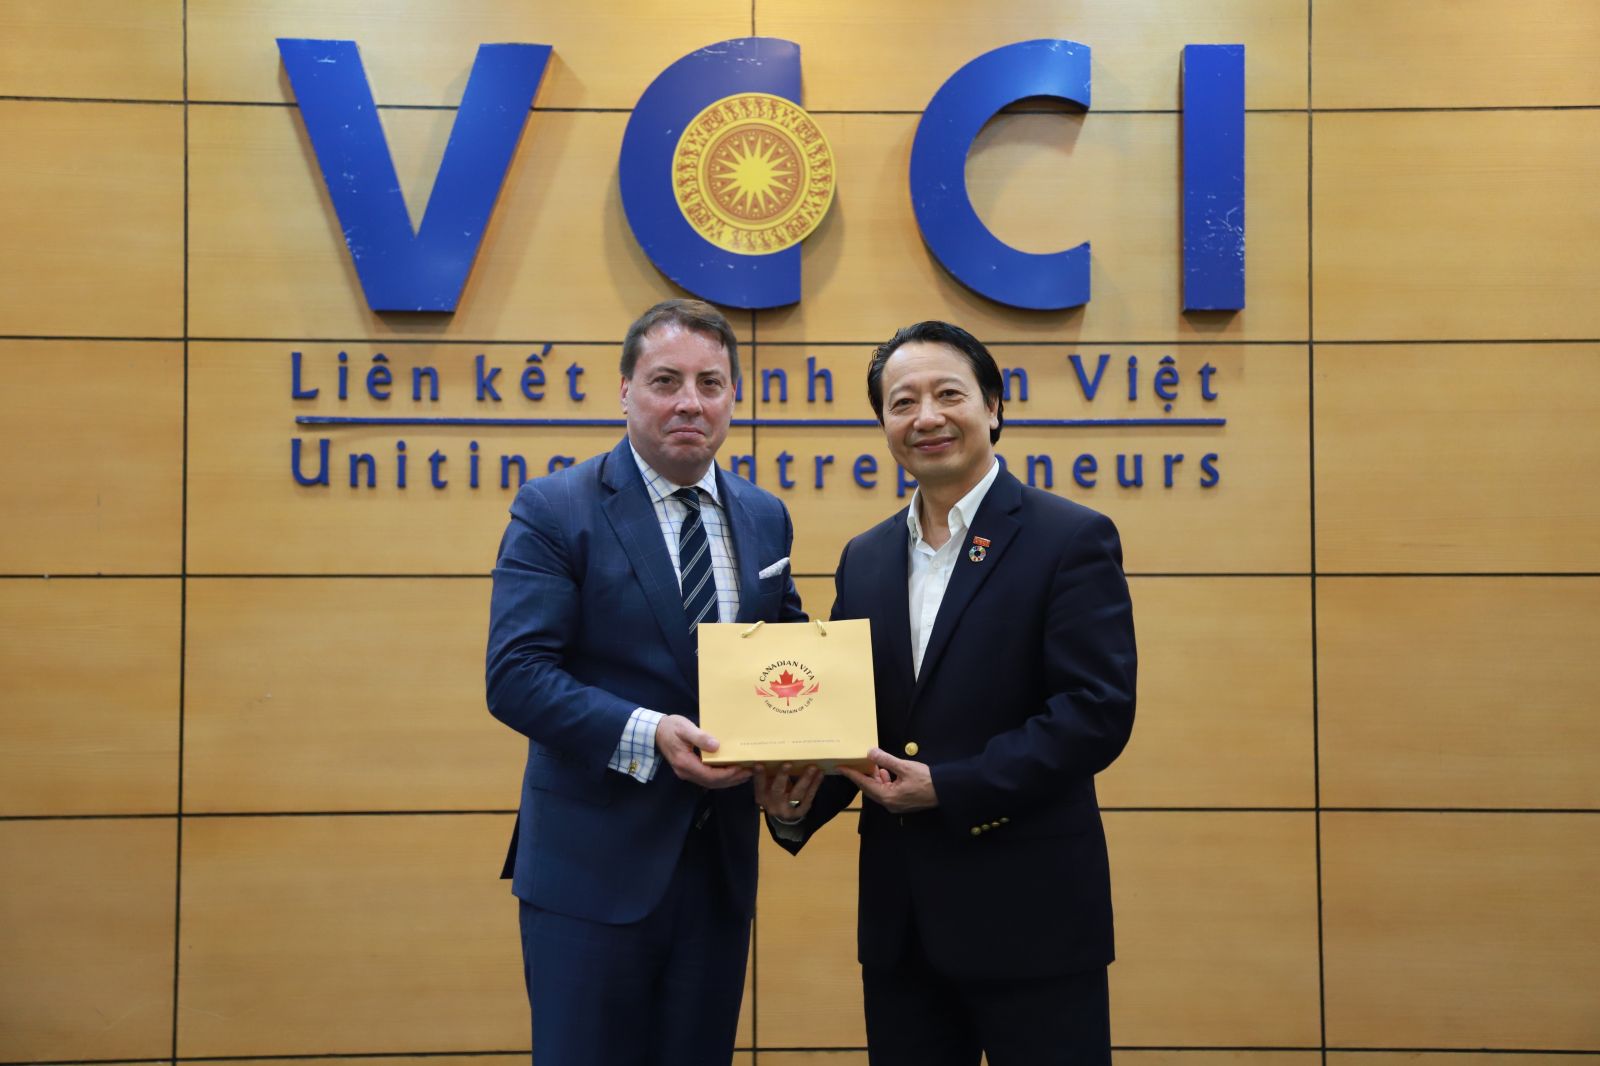 Chủ tịch ASEAN BAC Việt Nam và Chủ tịch Hội đồng Doanh nghiệp Canada - ASEAN (CABC)